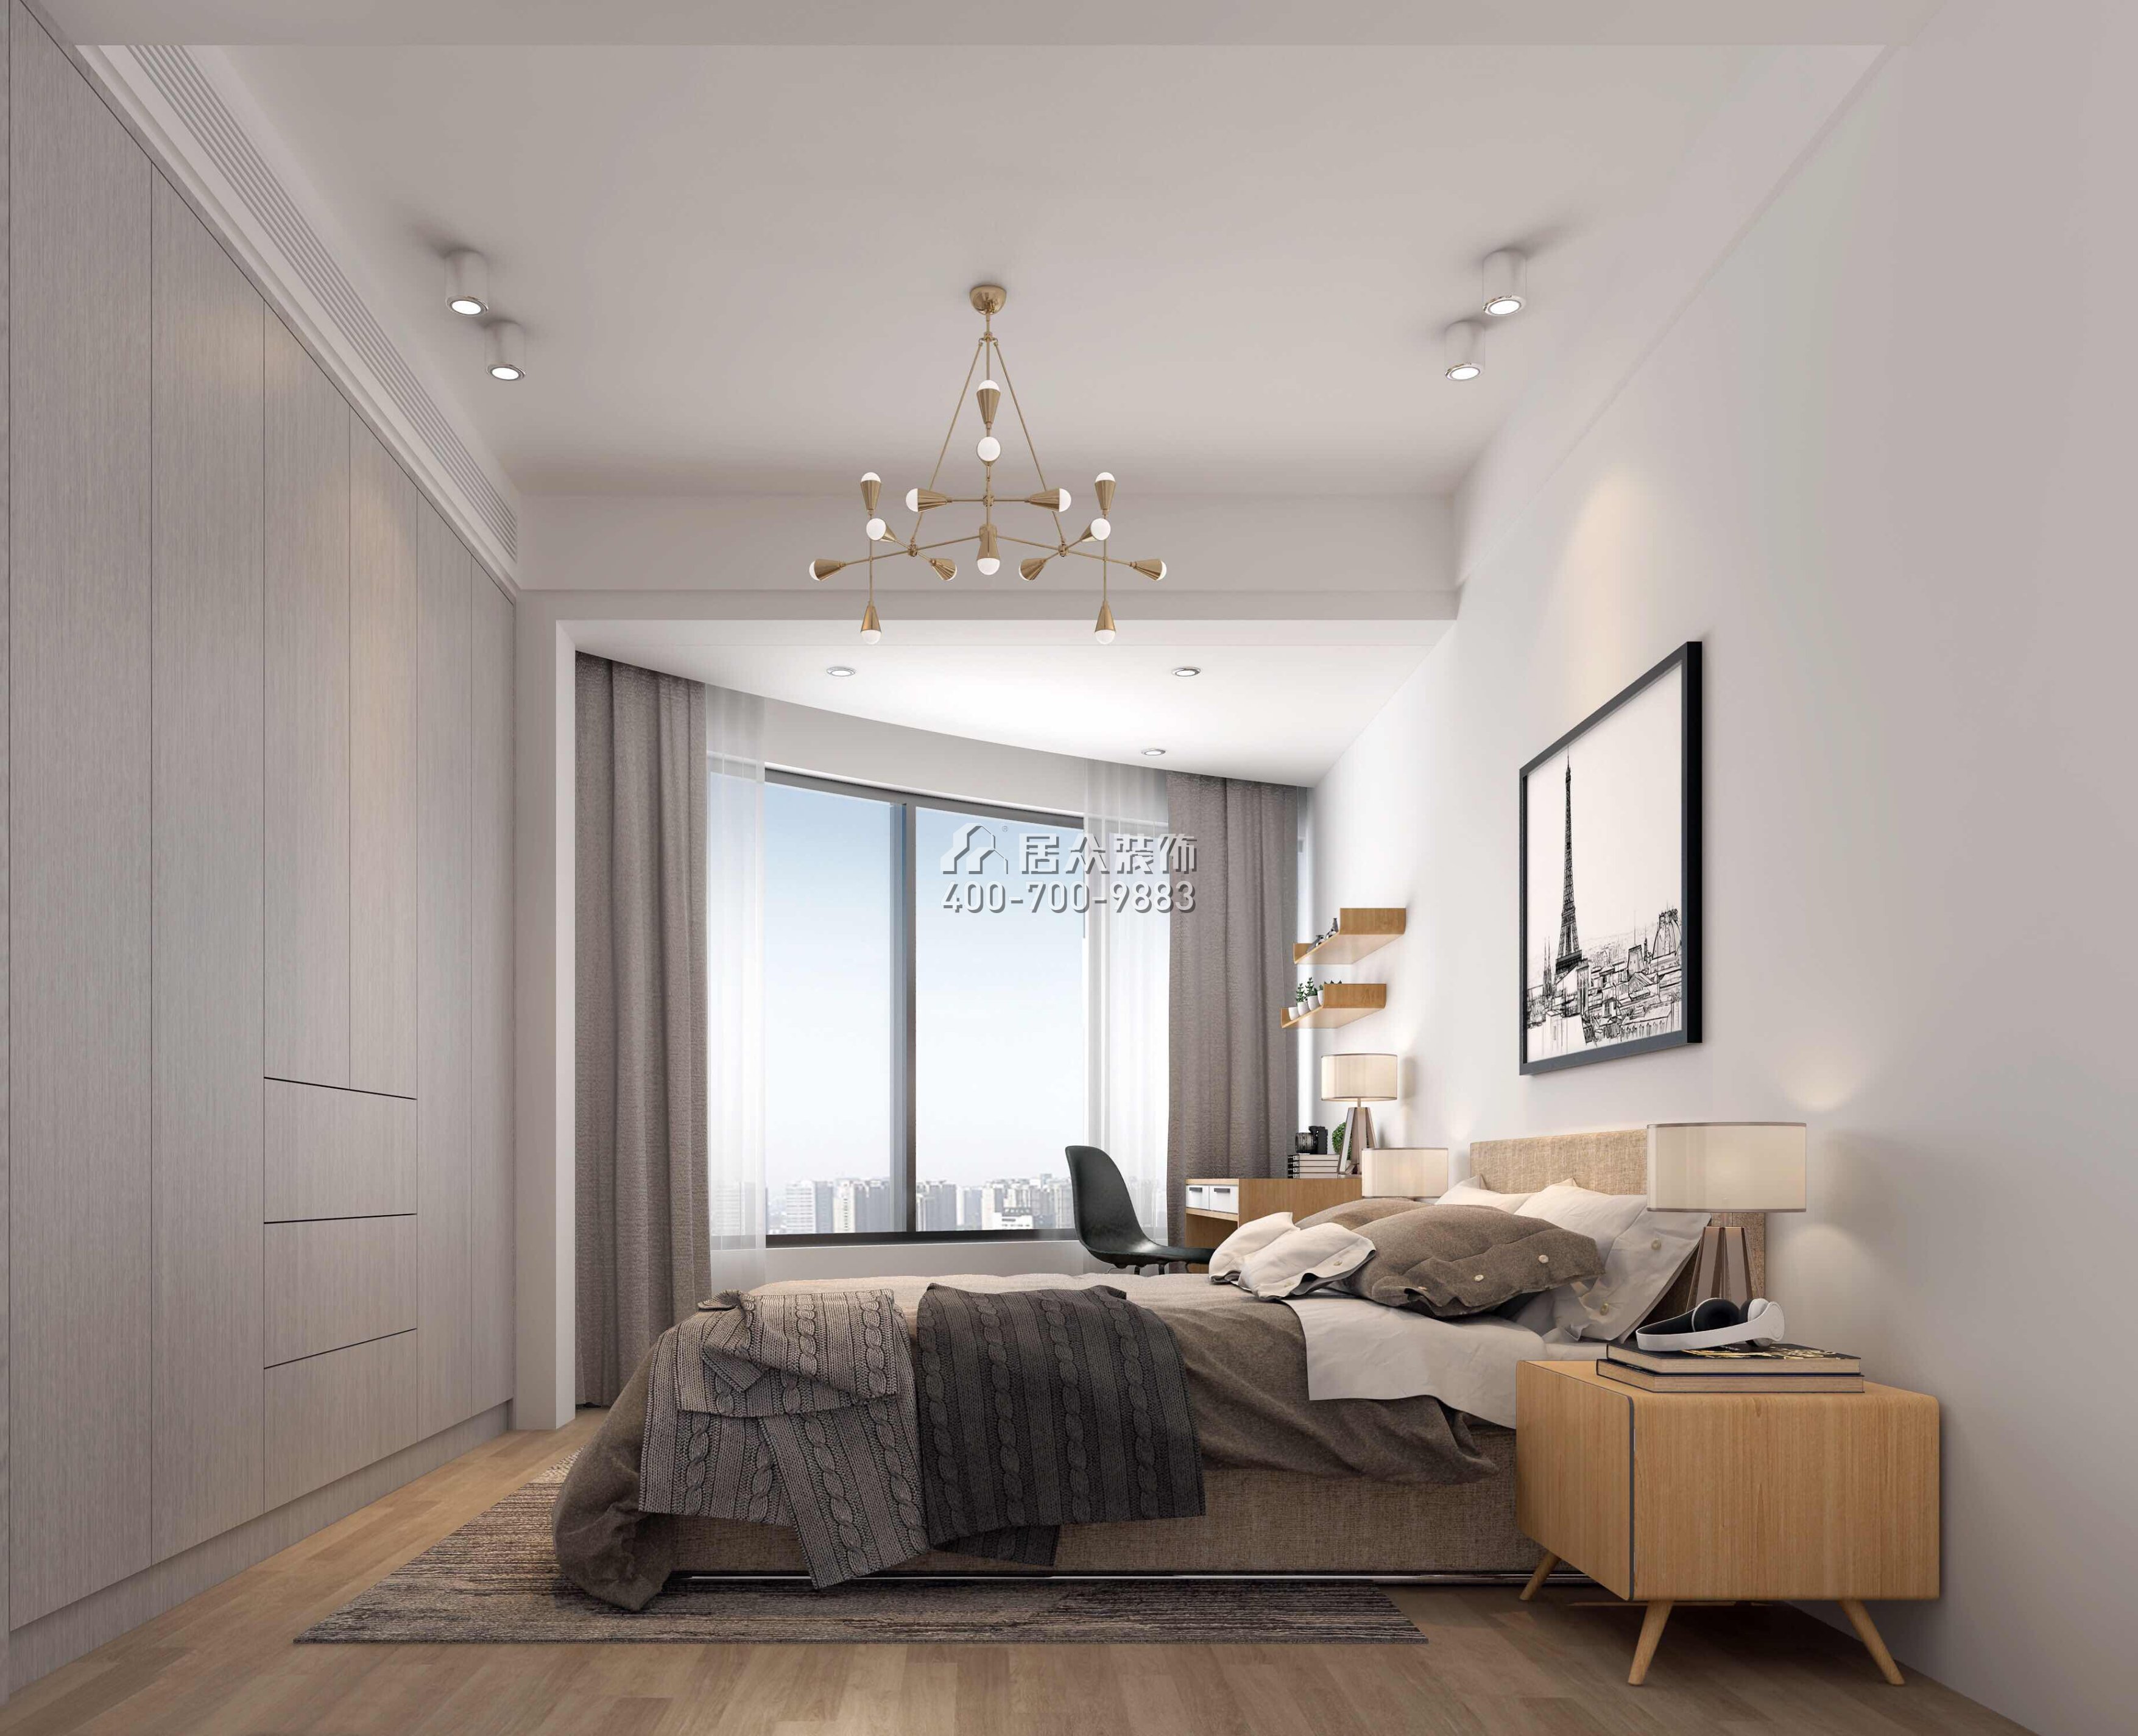 招商海月二期89平方米現代簡約風格平層戶型臥室裝修效果圖